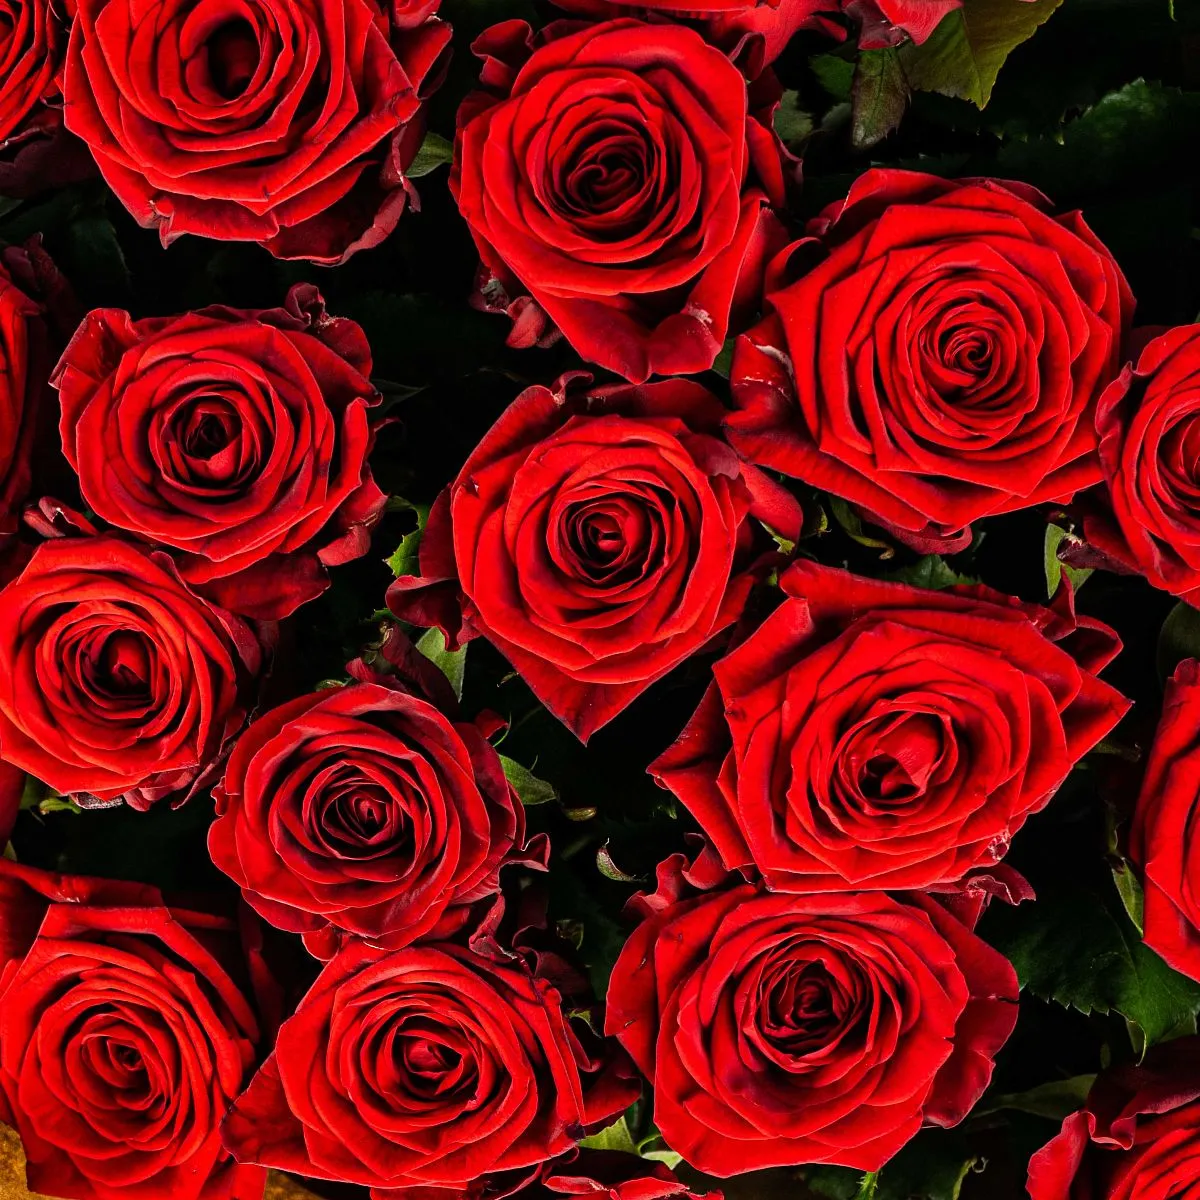 31 красная роза (70 см)